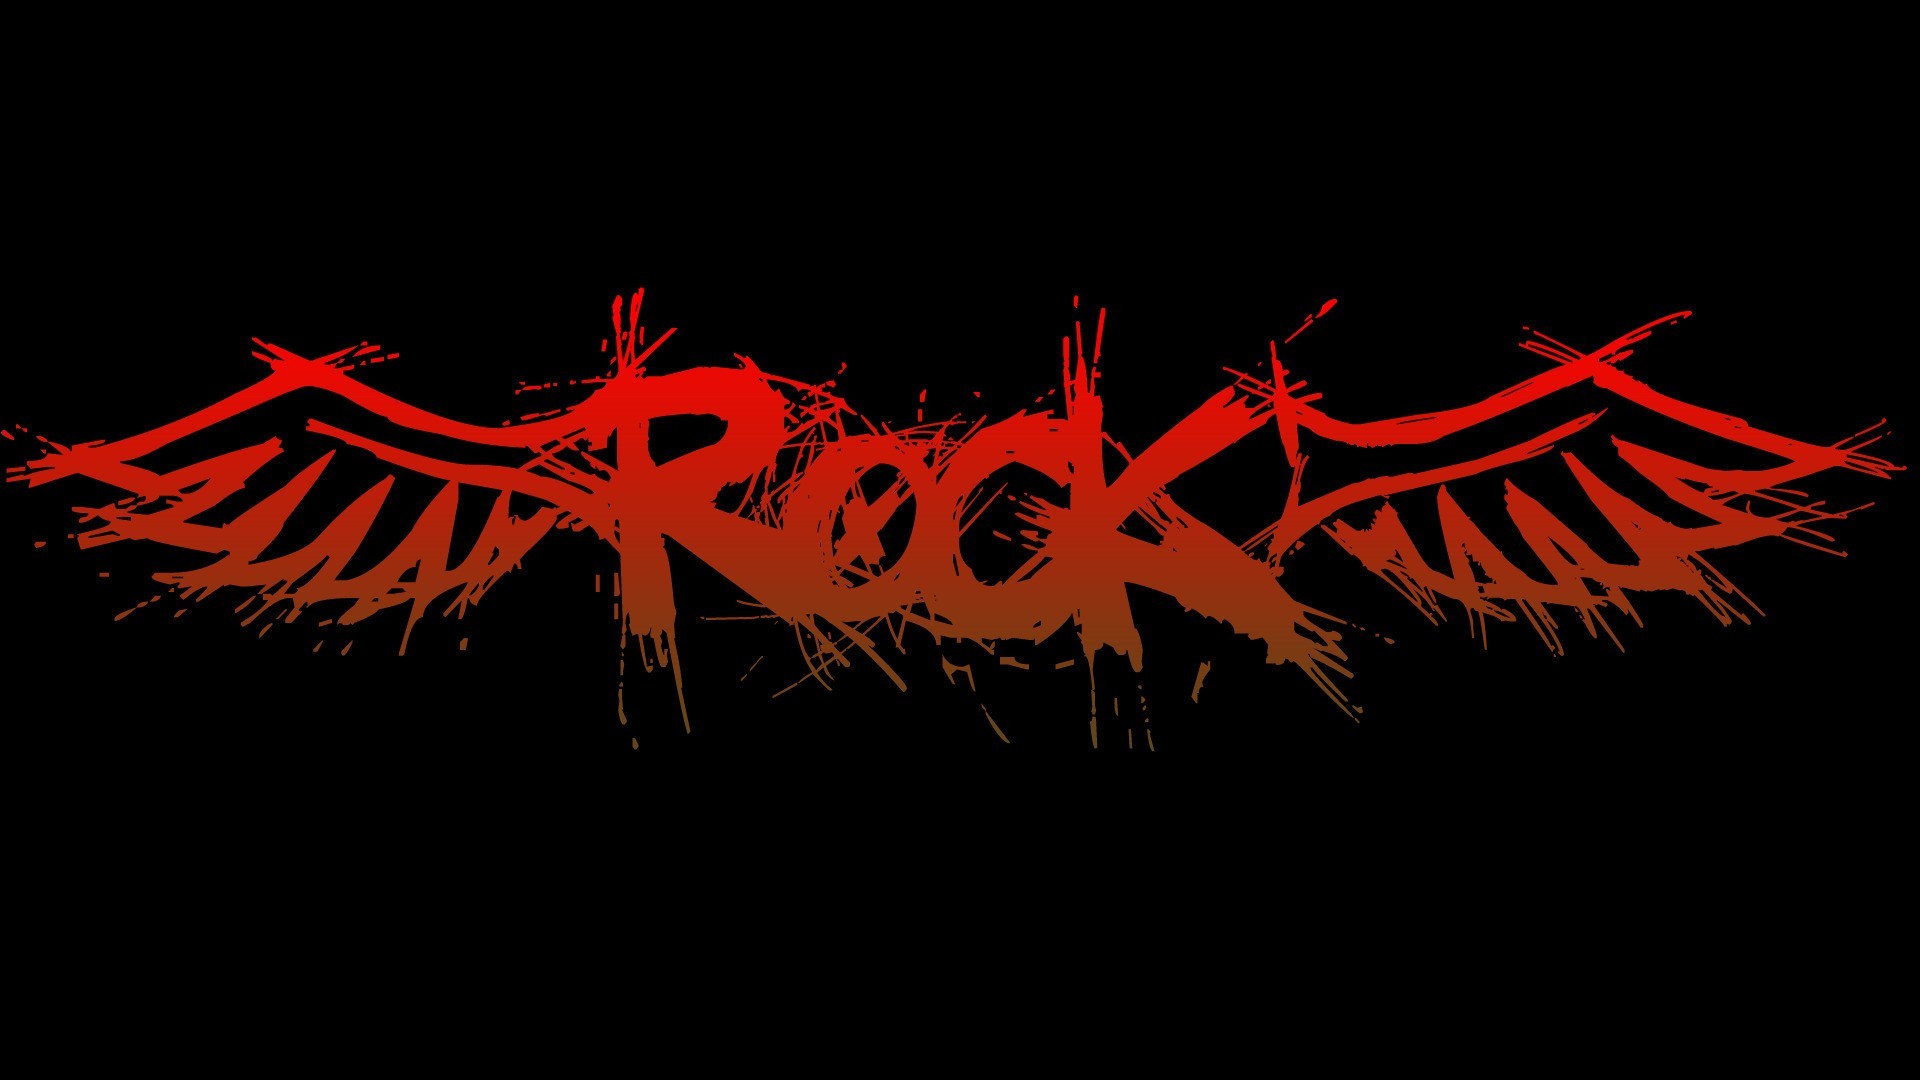 51 Punk Rock Backgrounds